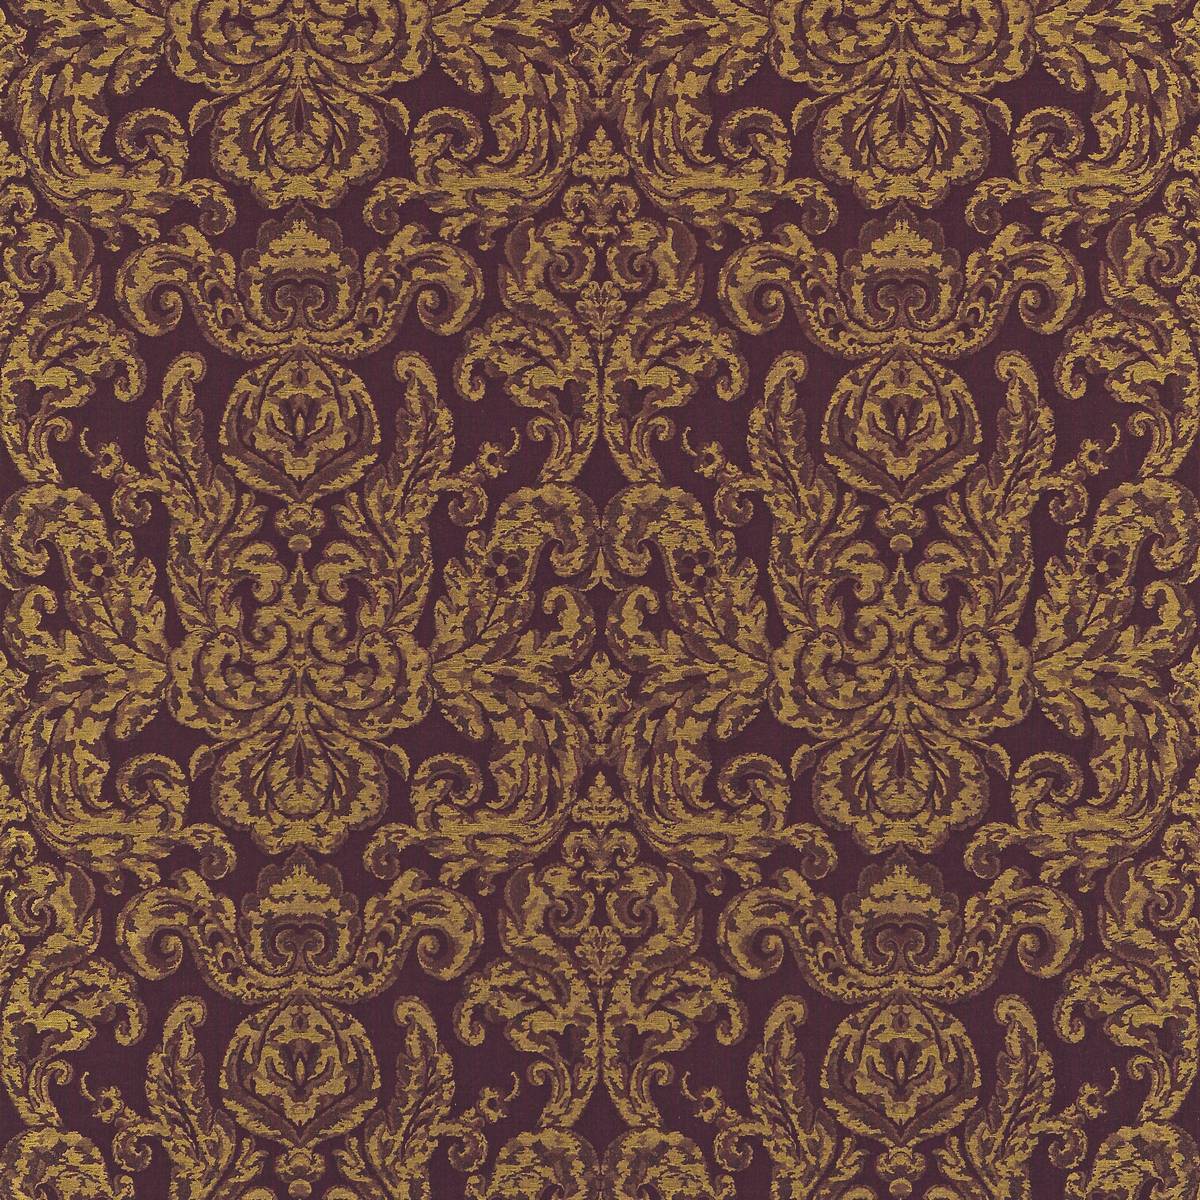 Brocatello Burgundy Fabric by Zoffany